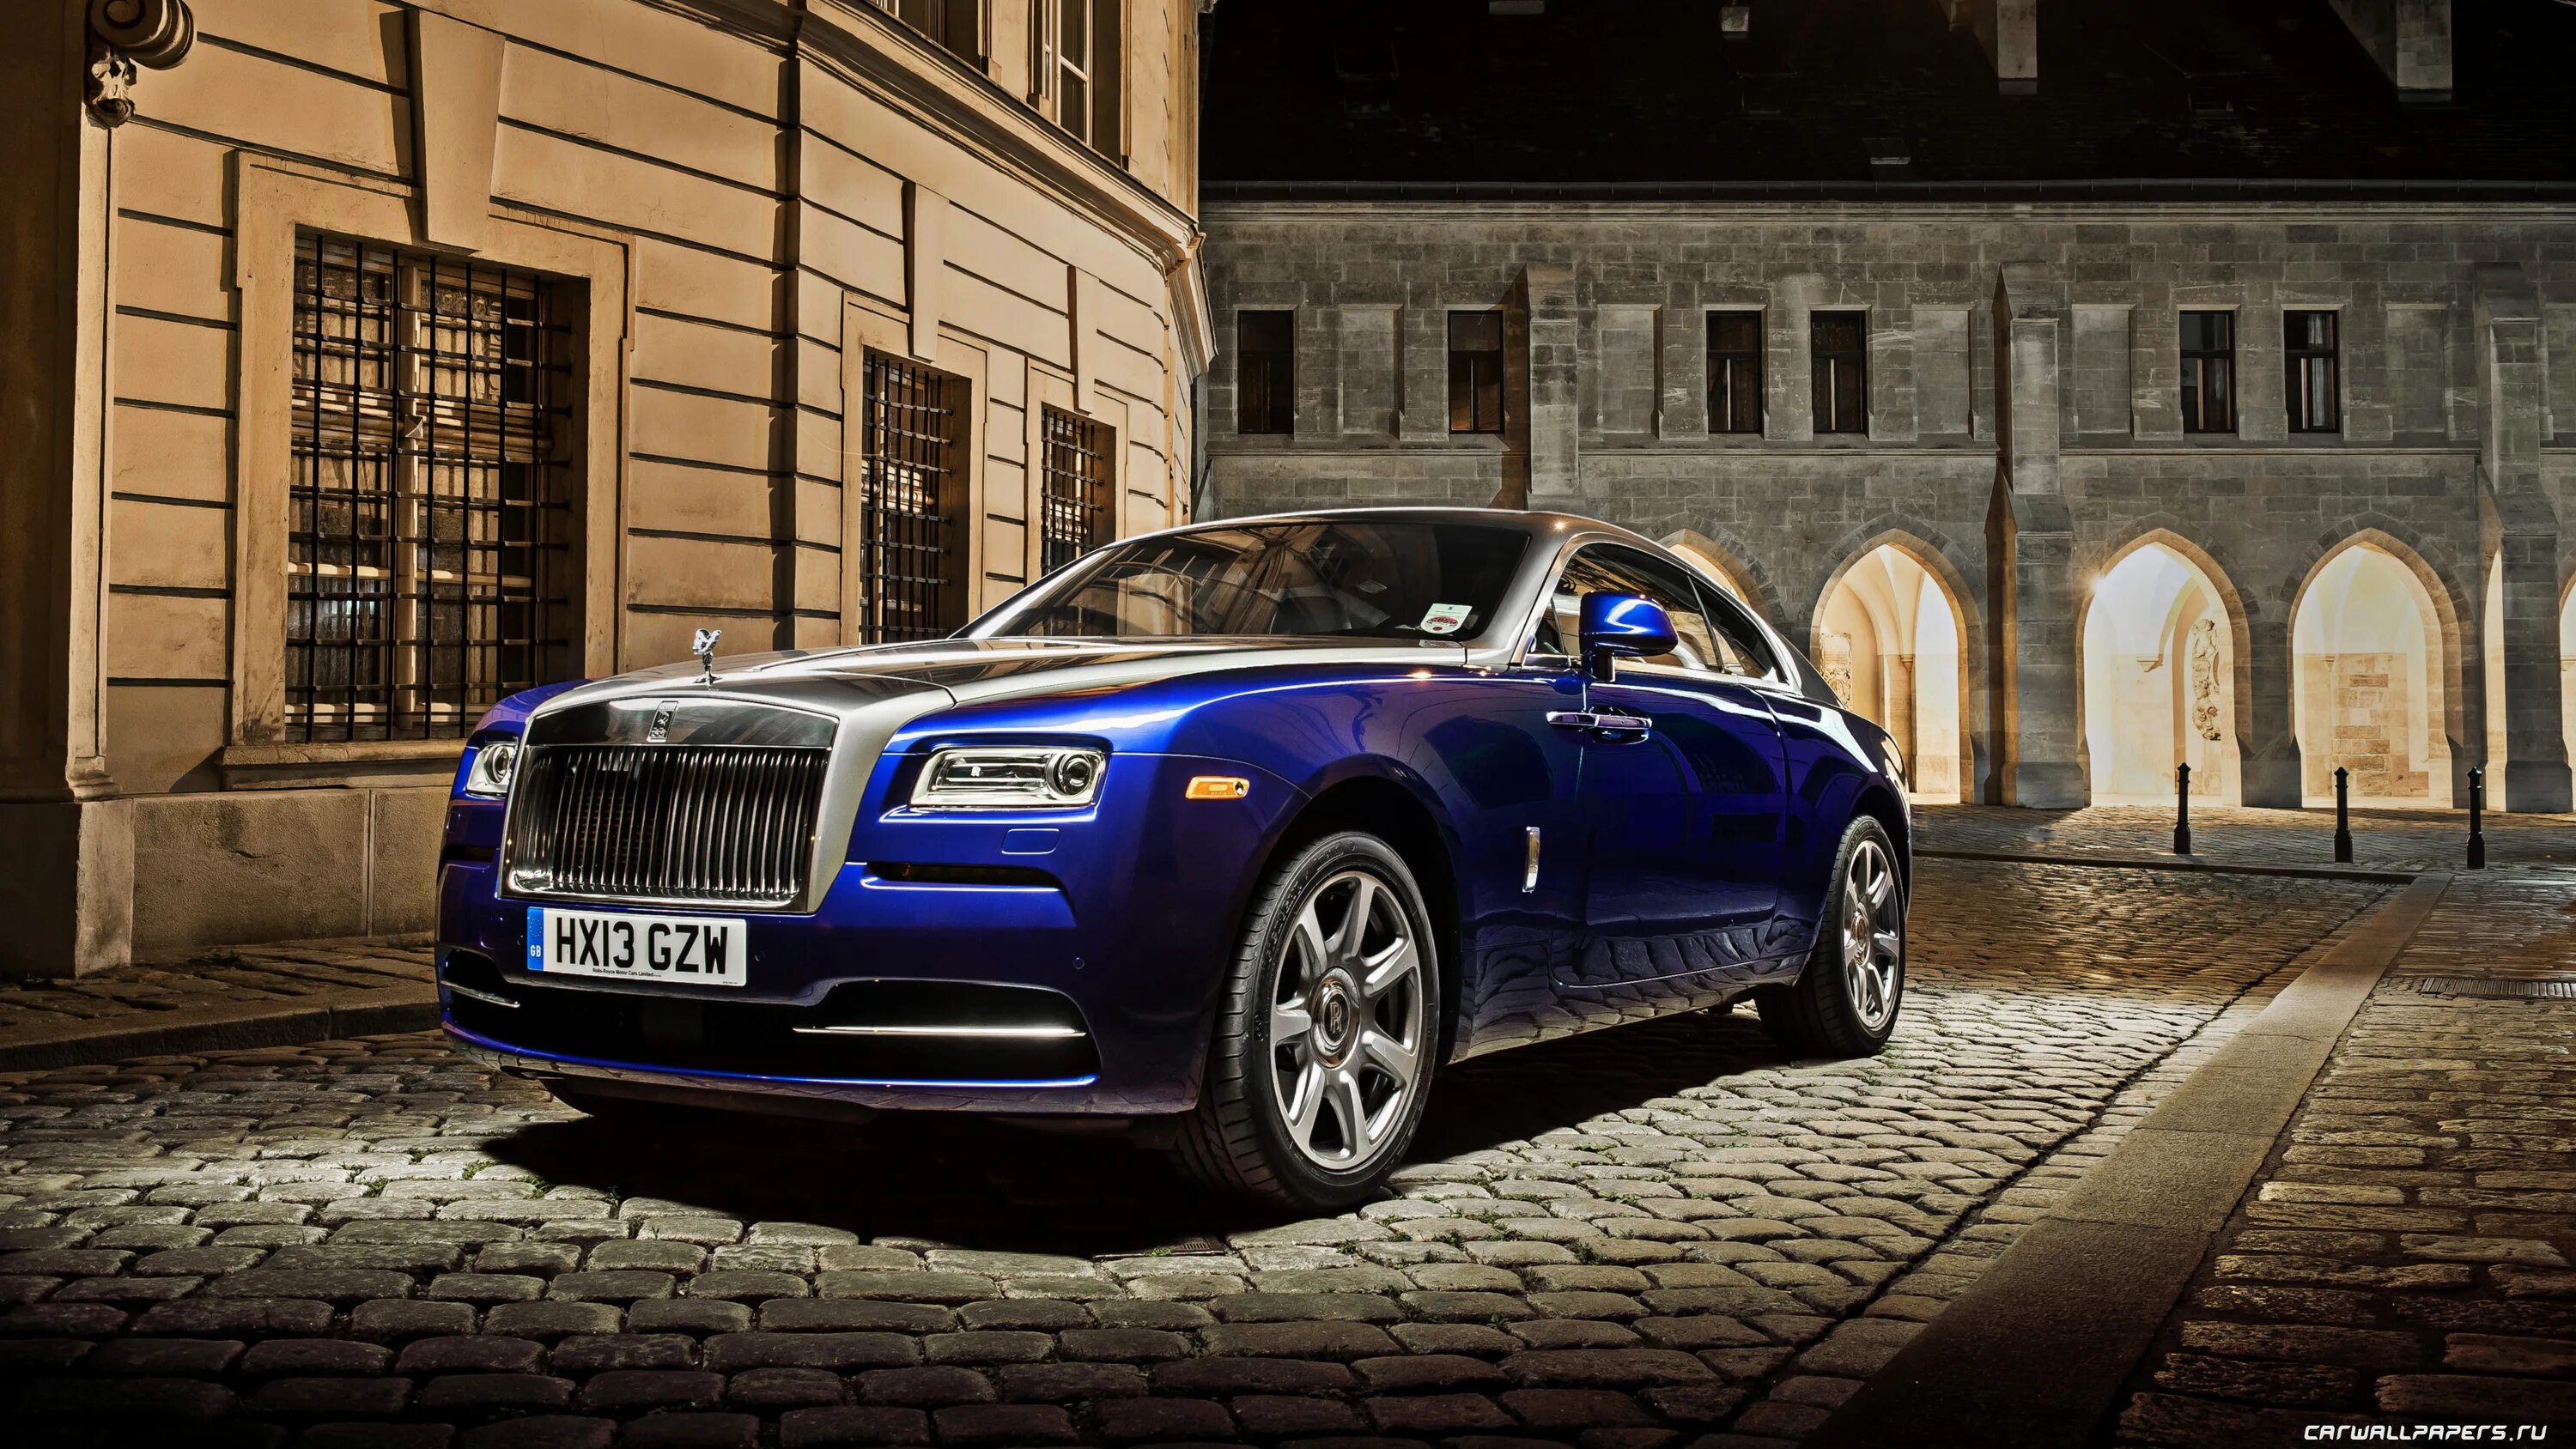 Машина Rolls Royce Wraith. Роллс Ройс 2016. Rolls-Royce Wraith (2013). Rolls Royce Phantom Coupe 2020.